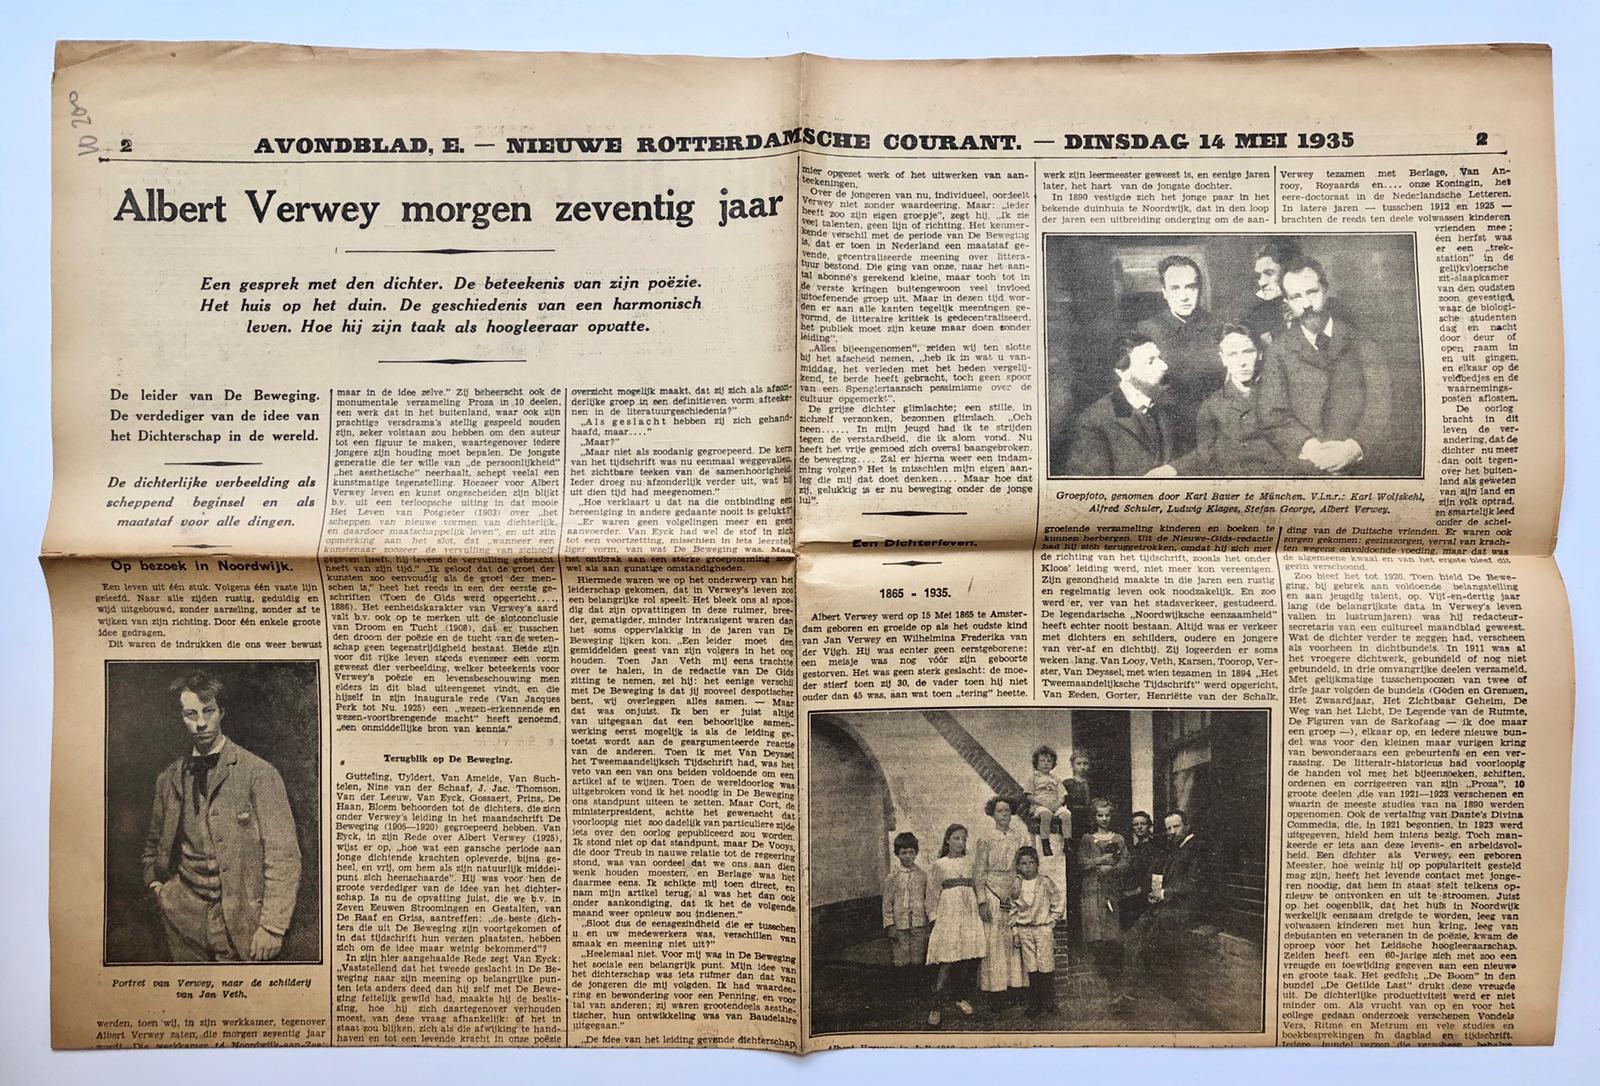  - [Newspaper reviews, Verwey 1935] Drie uitvoerige krantenartikelen uit 1935 over Albert Verwey, o.a. betr. 70e- verjaardag.